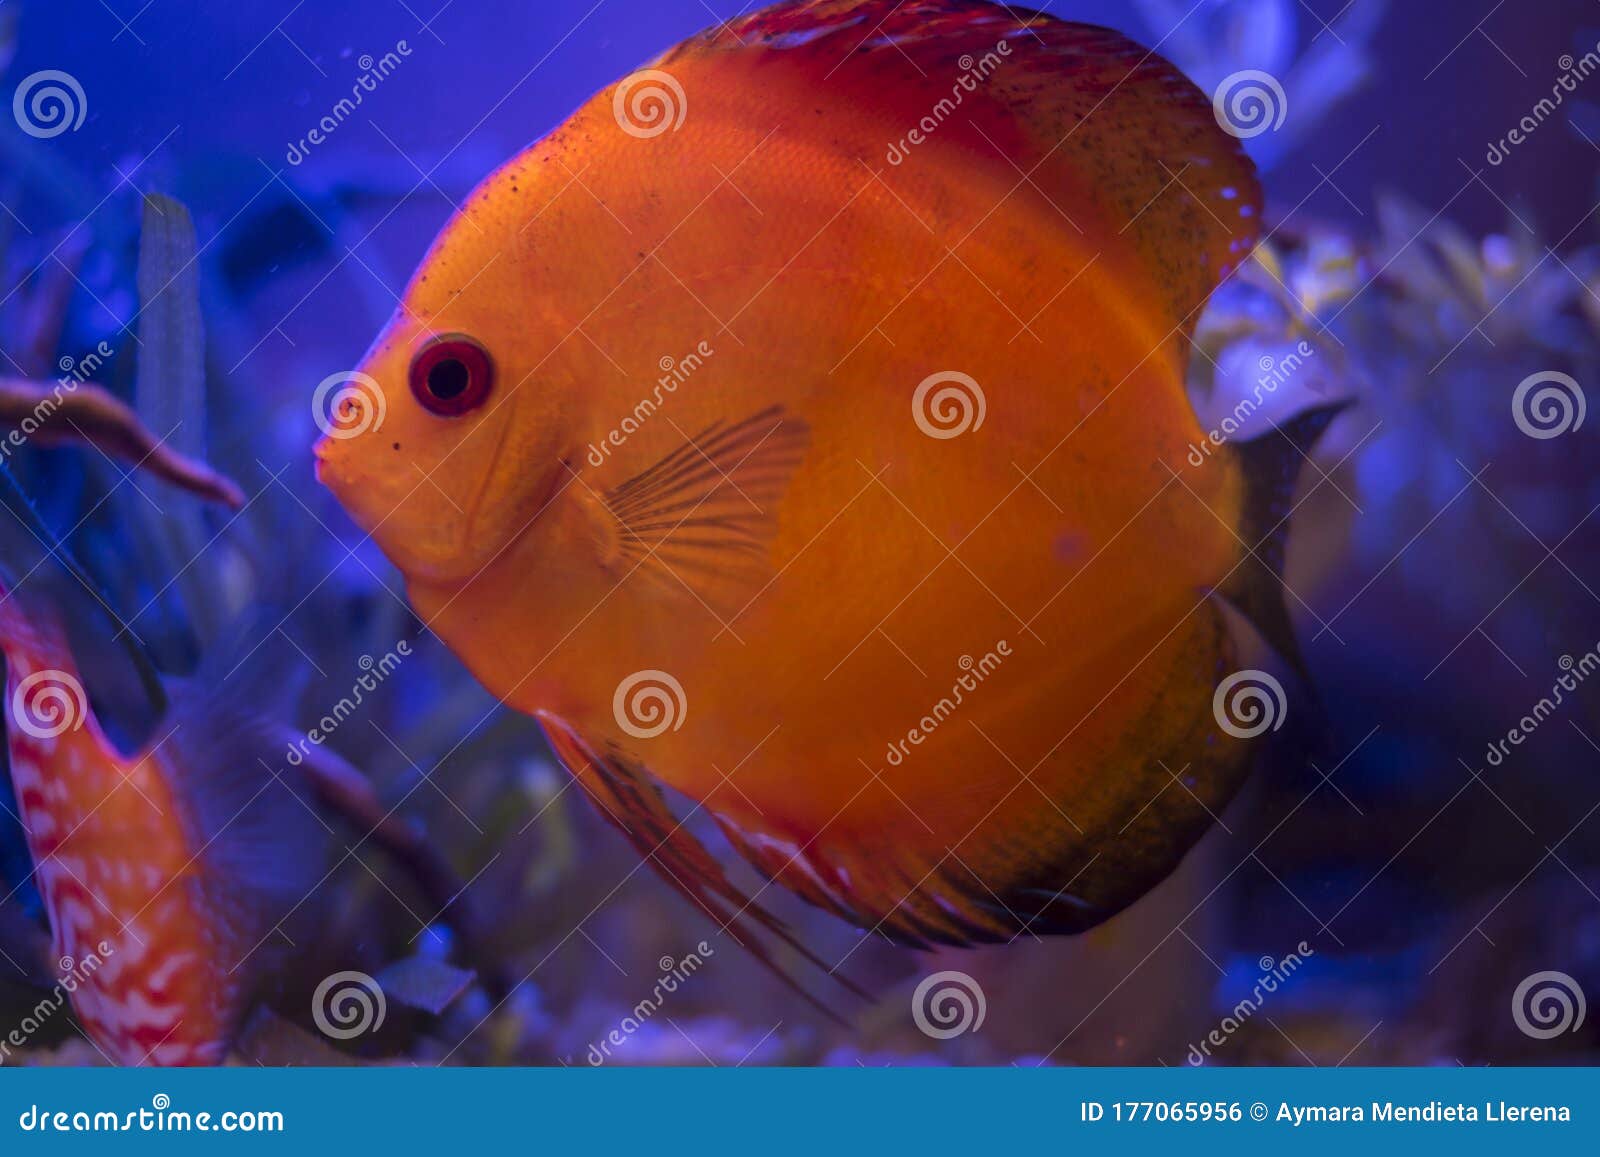 orange discus in my aquarium